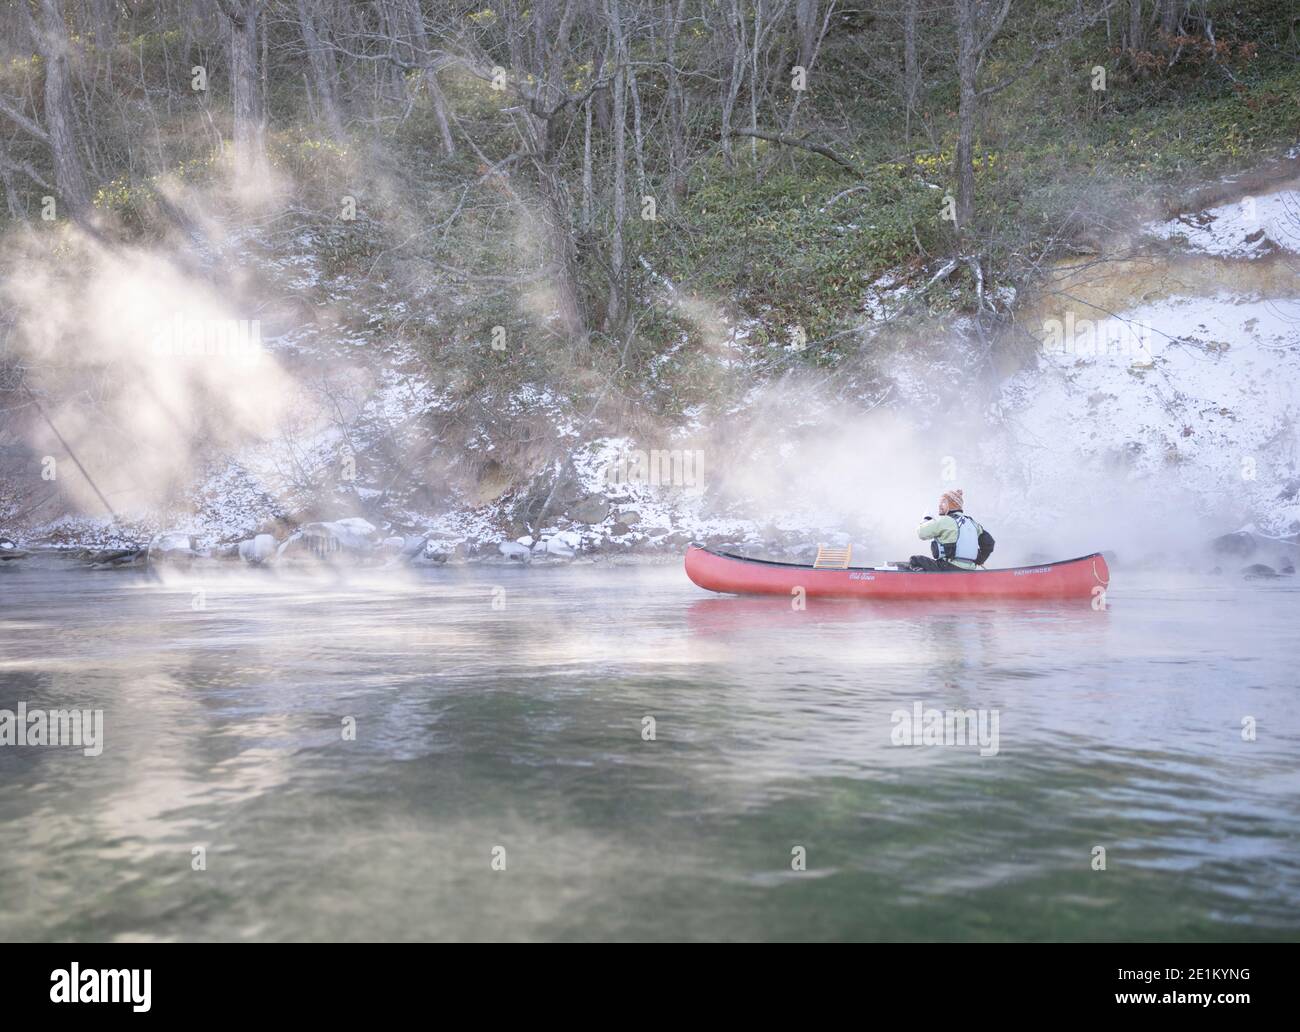 Local guide Kenichi Sobue winter canoeing on Lake Kussharo 屈斜路湖, Kussharo-ko caldera lake  Akan National Park,  Hokkaido, Japan. Stock Photo